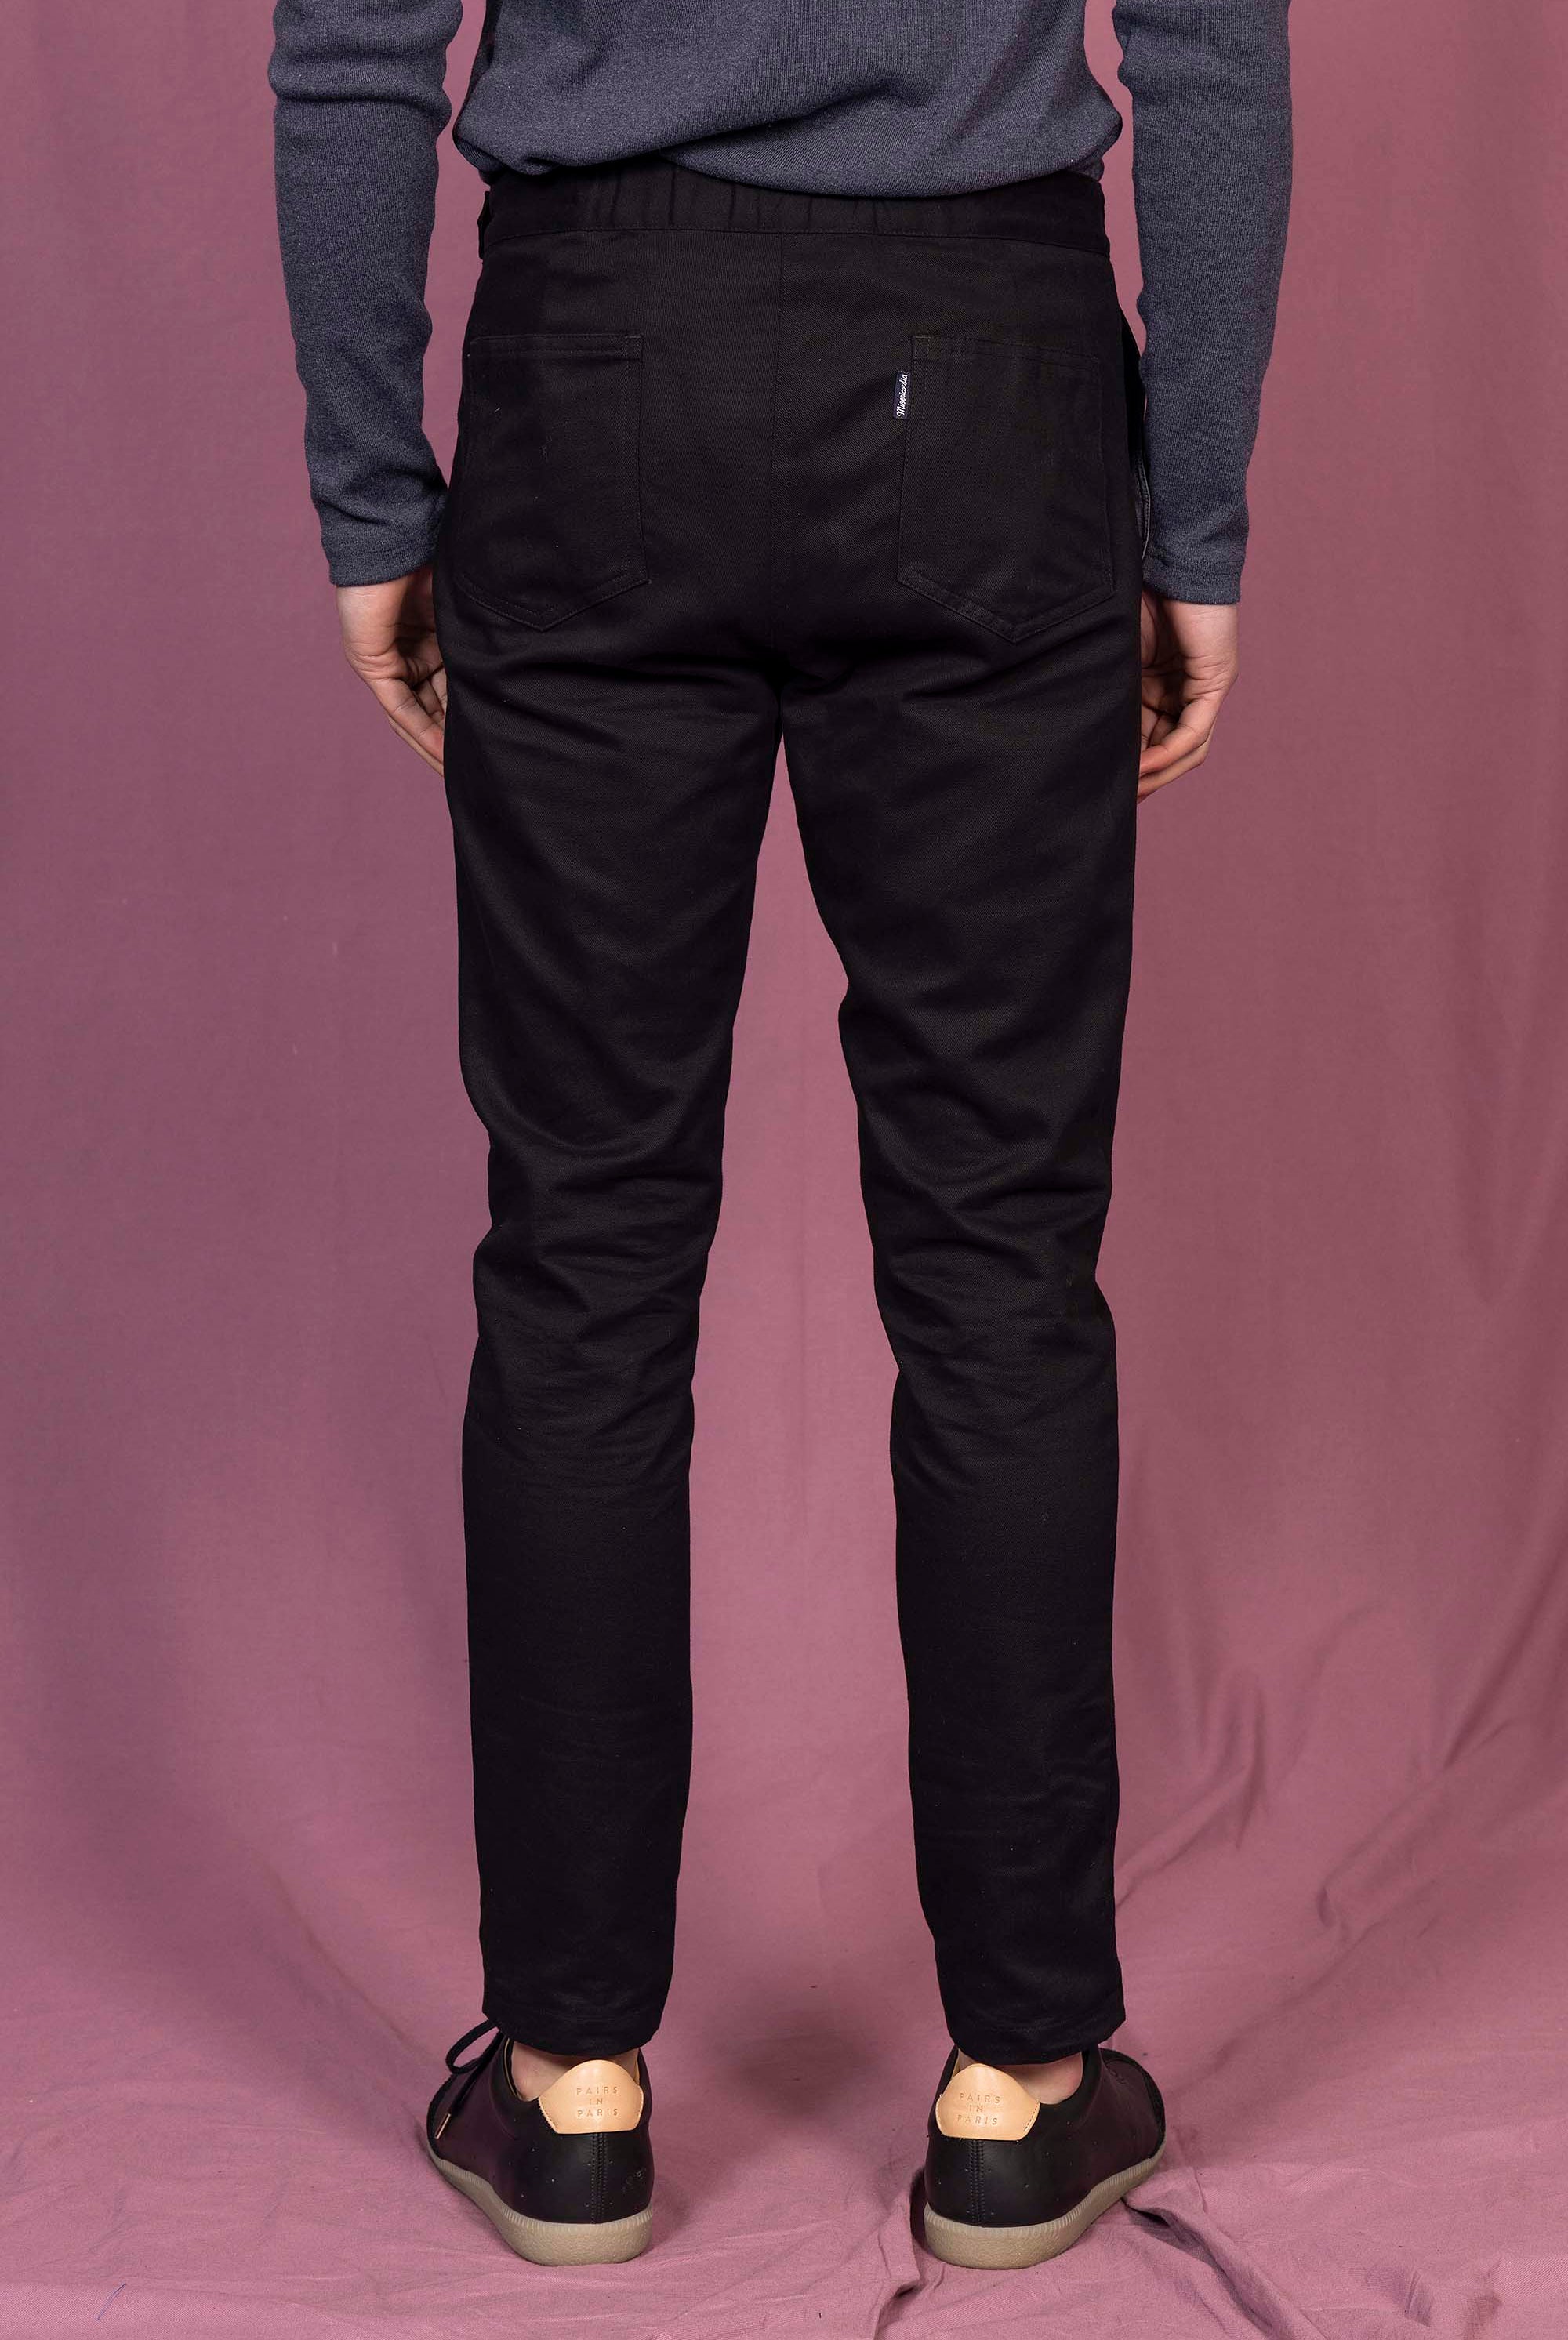 Pantalon Caiman Noir particulièrement confortables et stylés, parfaits à porter au quotidien